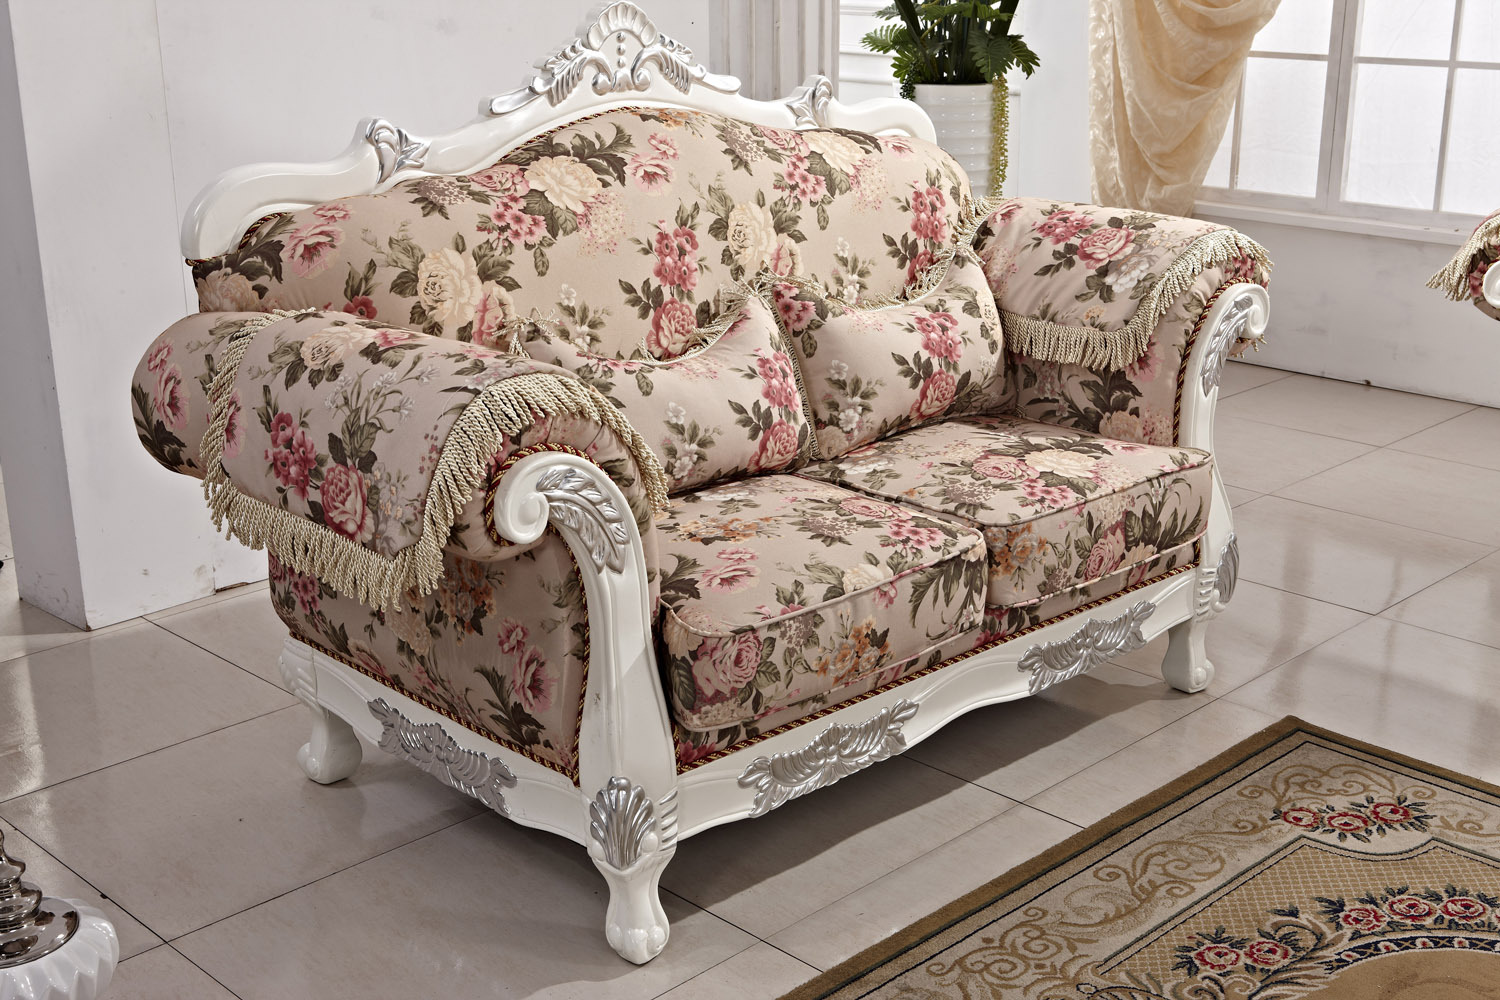 热销欧式布艺沙发组合 欧美宫廷布艺沙发 舒适懒人沙发 欧式家具